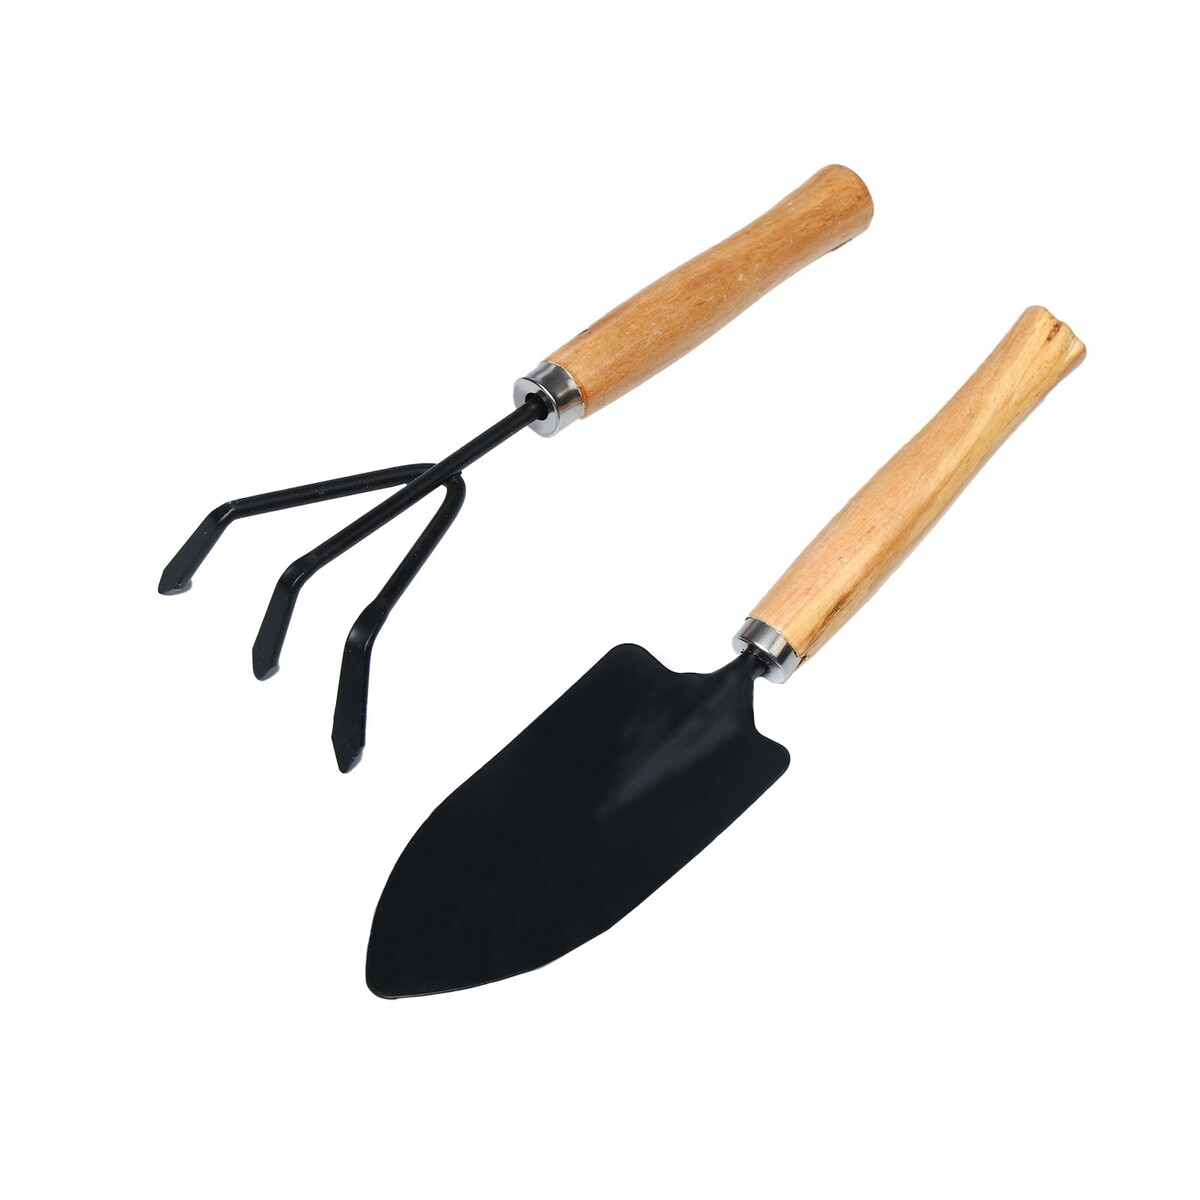 Набор садового инструмента, 2 предмета: рыхлитель, совок, длина 26 см, деревянные ручки набор садового инструмента 3 предмета рыхлитель совок грабли длина 20 см